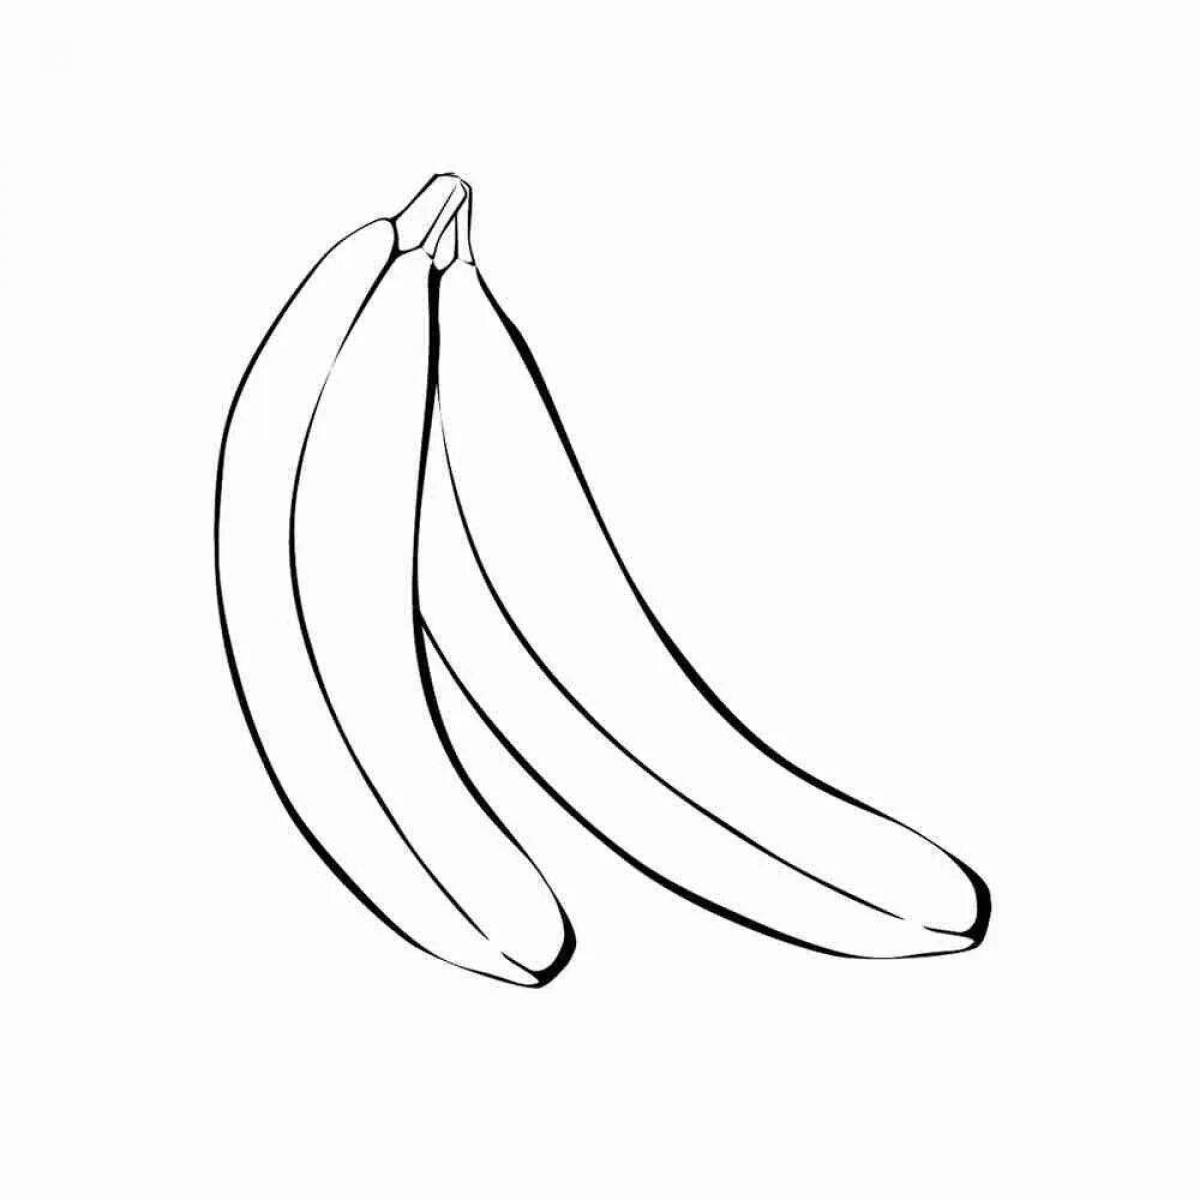 Drawing of a glowing banana